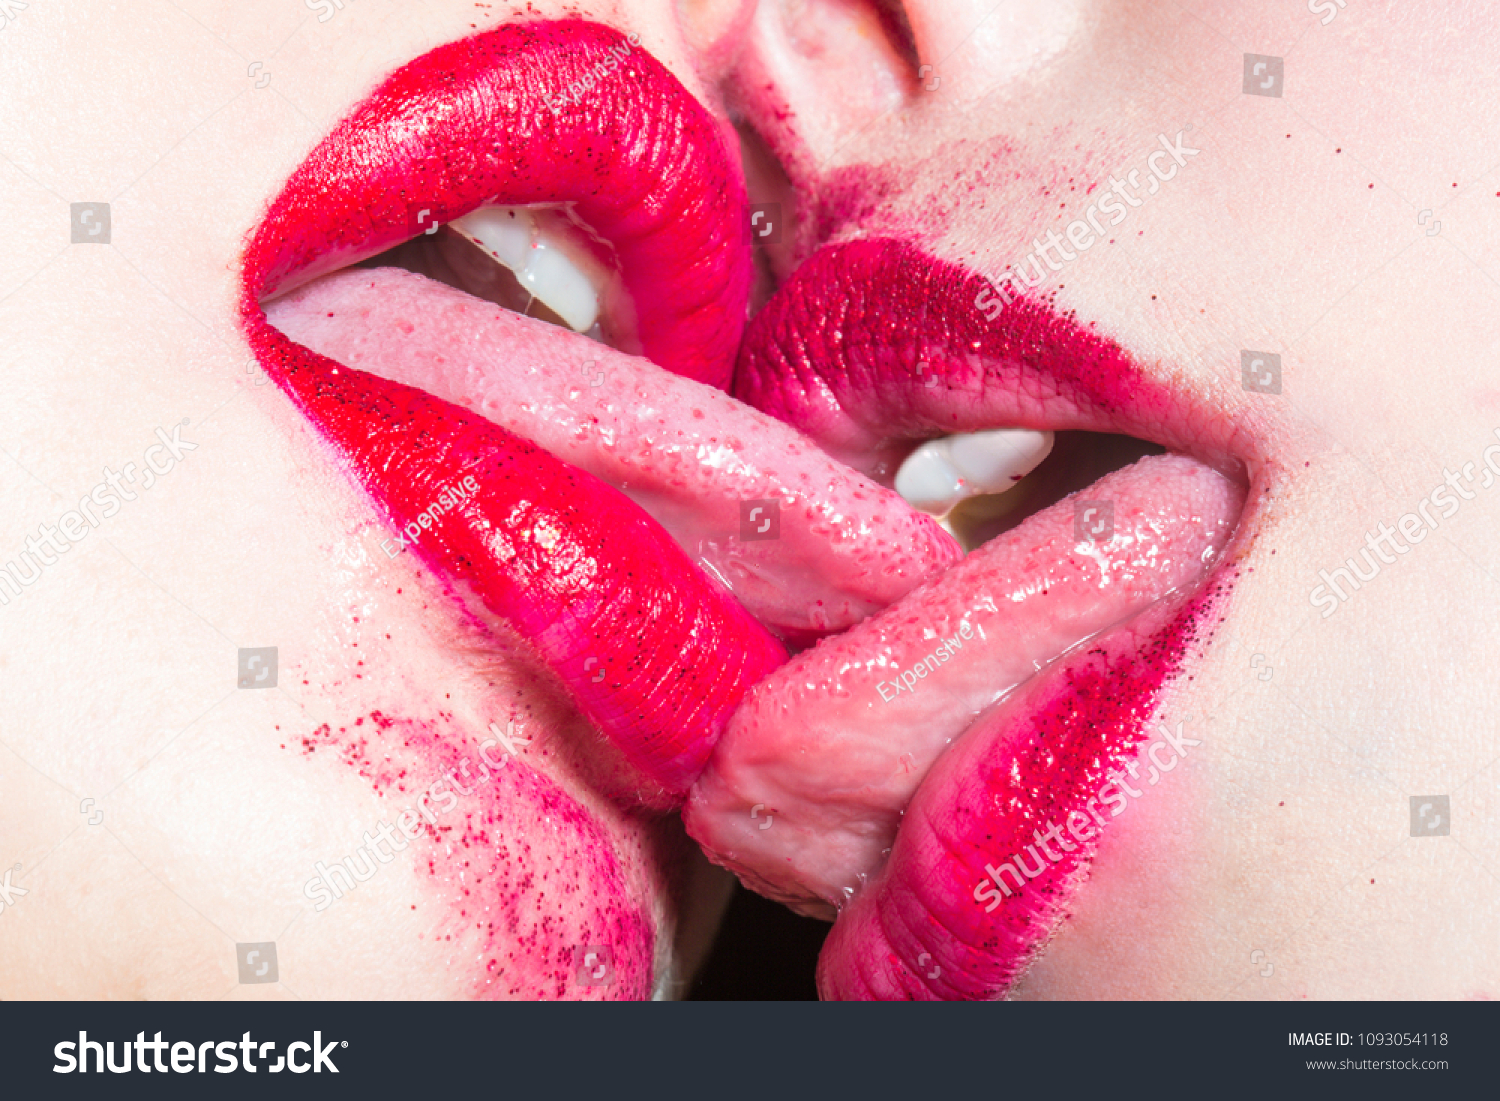 Messy lipstick czech lesbian teen girlfriends fan xxx pic